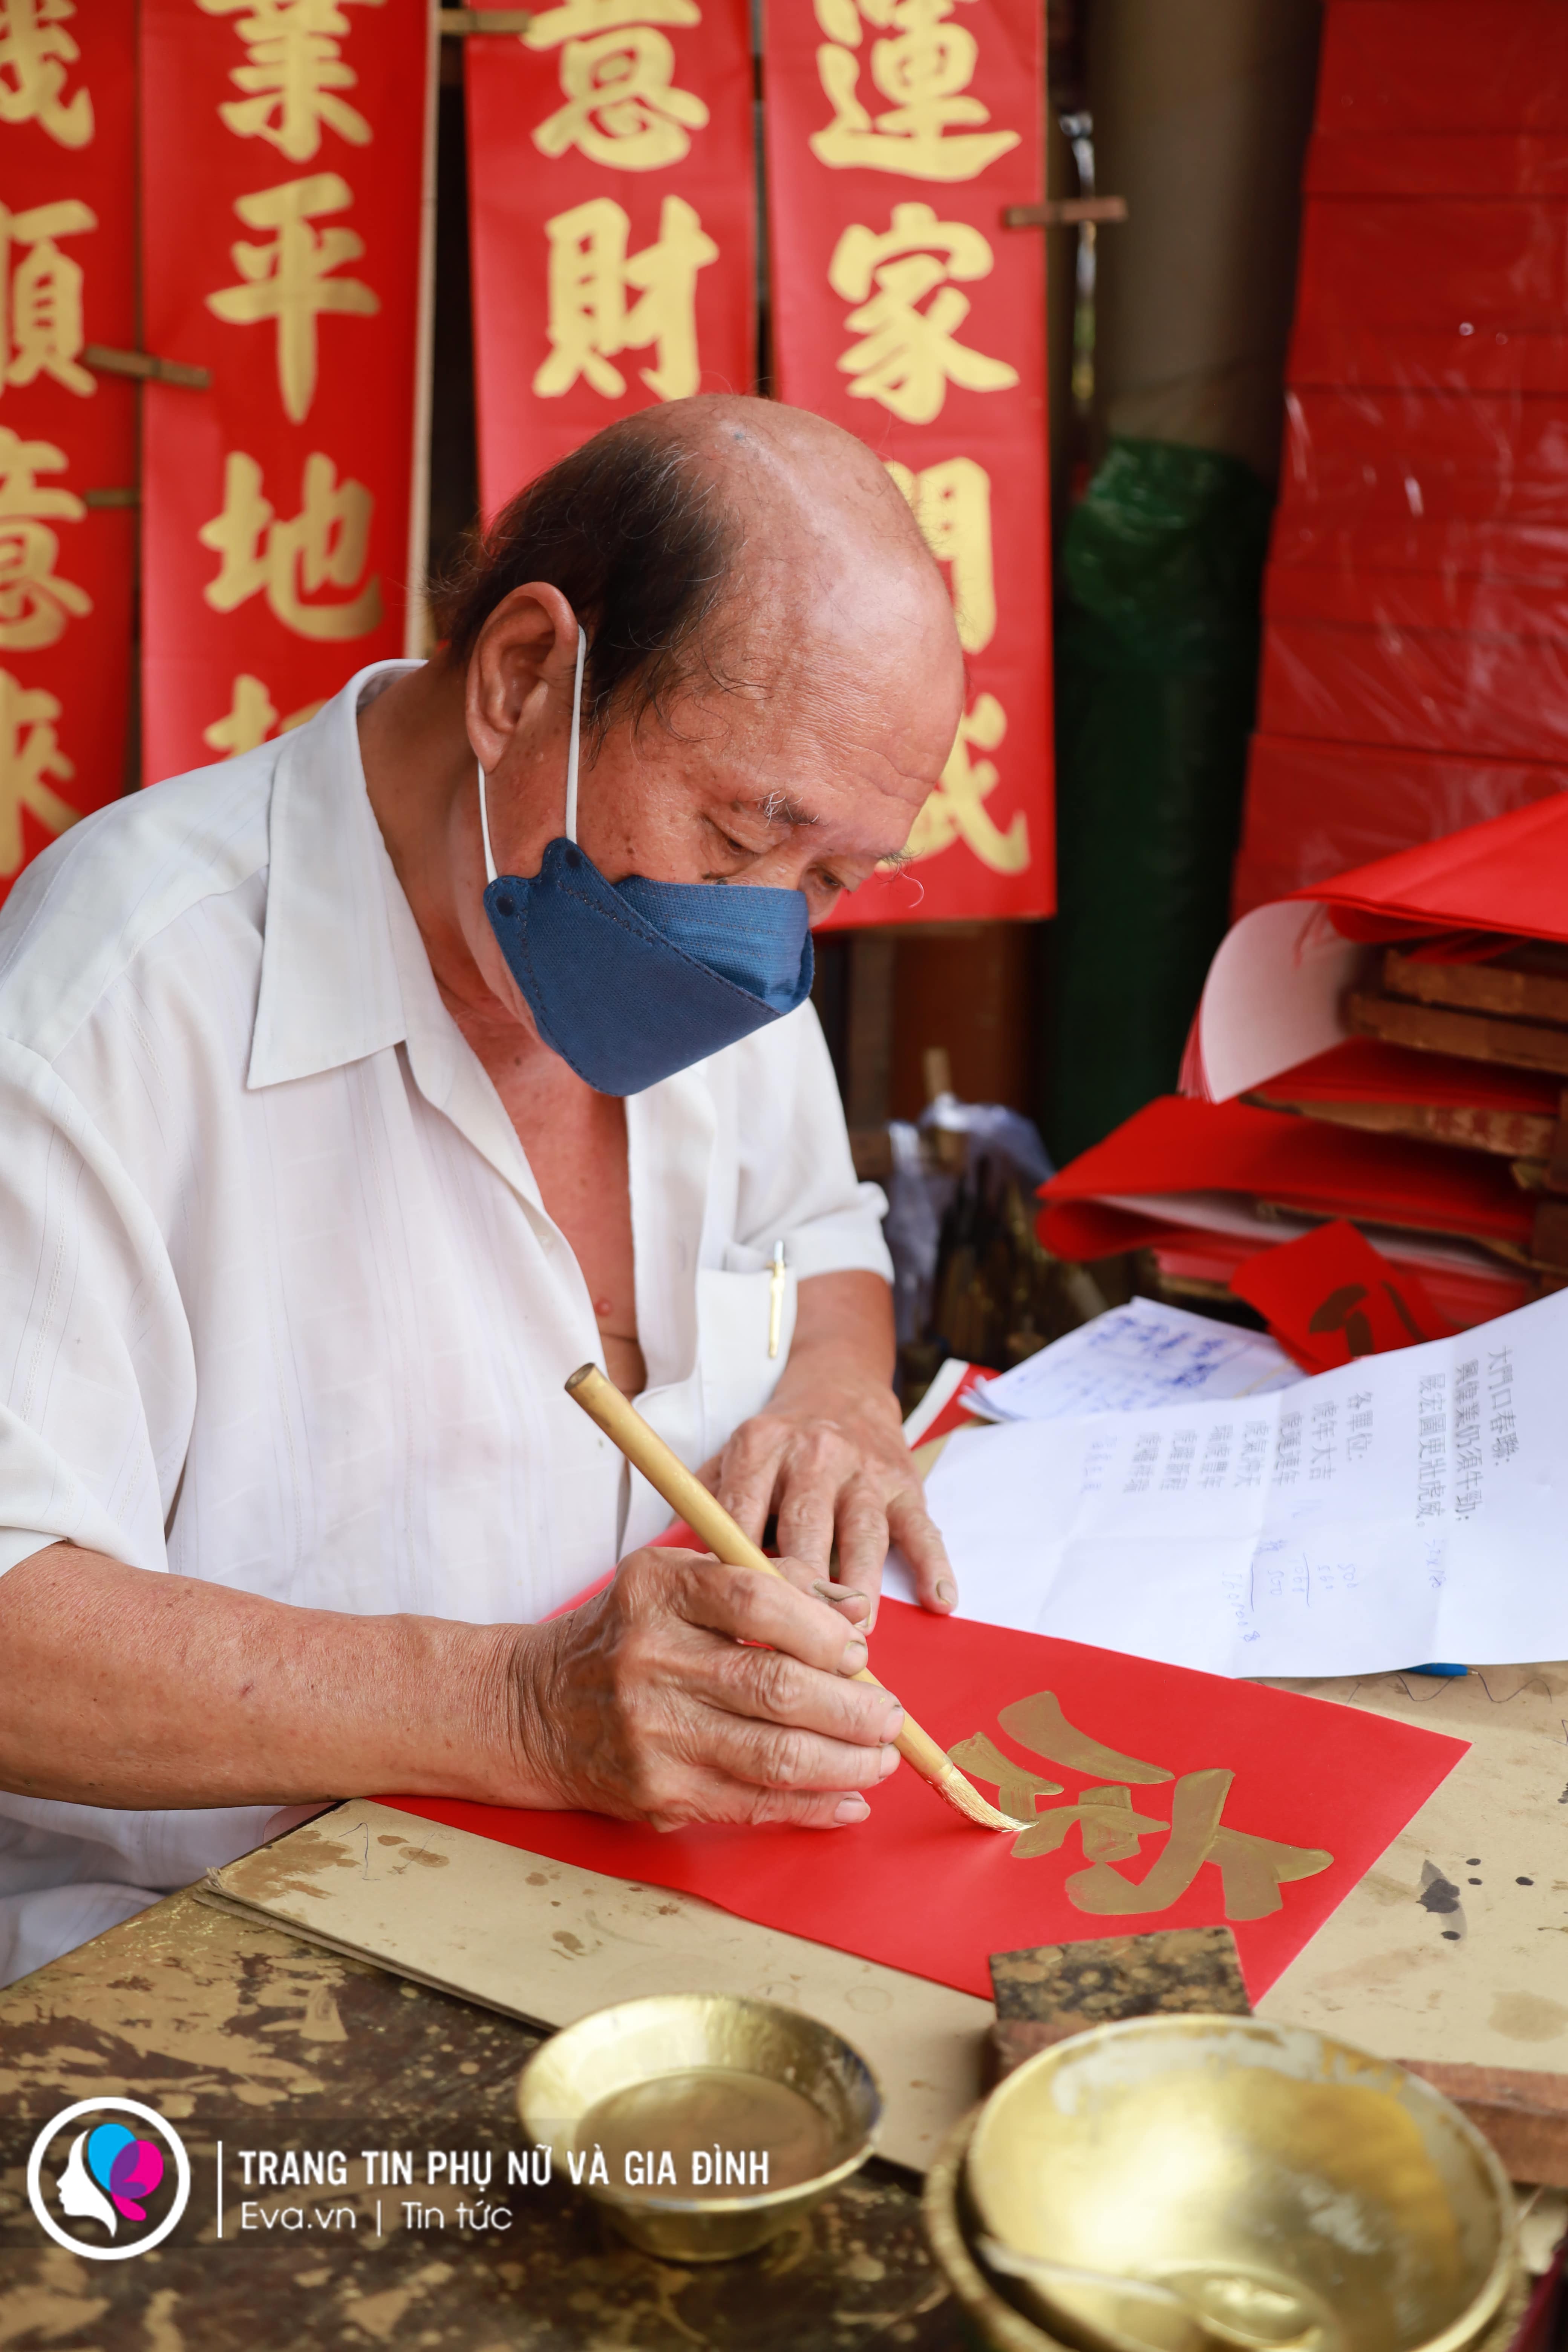 emXin chữ cũng là nét văn hóa độc đáo của nhiều người Hoa sống tại khu vực này. Các câu chữ được viết trên giấy đỏ để chúc cho năm mới khỏe mạnh, bình an và sung túc. Tùy vào từng số chữ, số câu mà giá tiền sẽ khác nhau./em